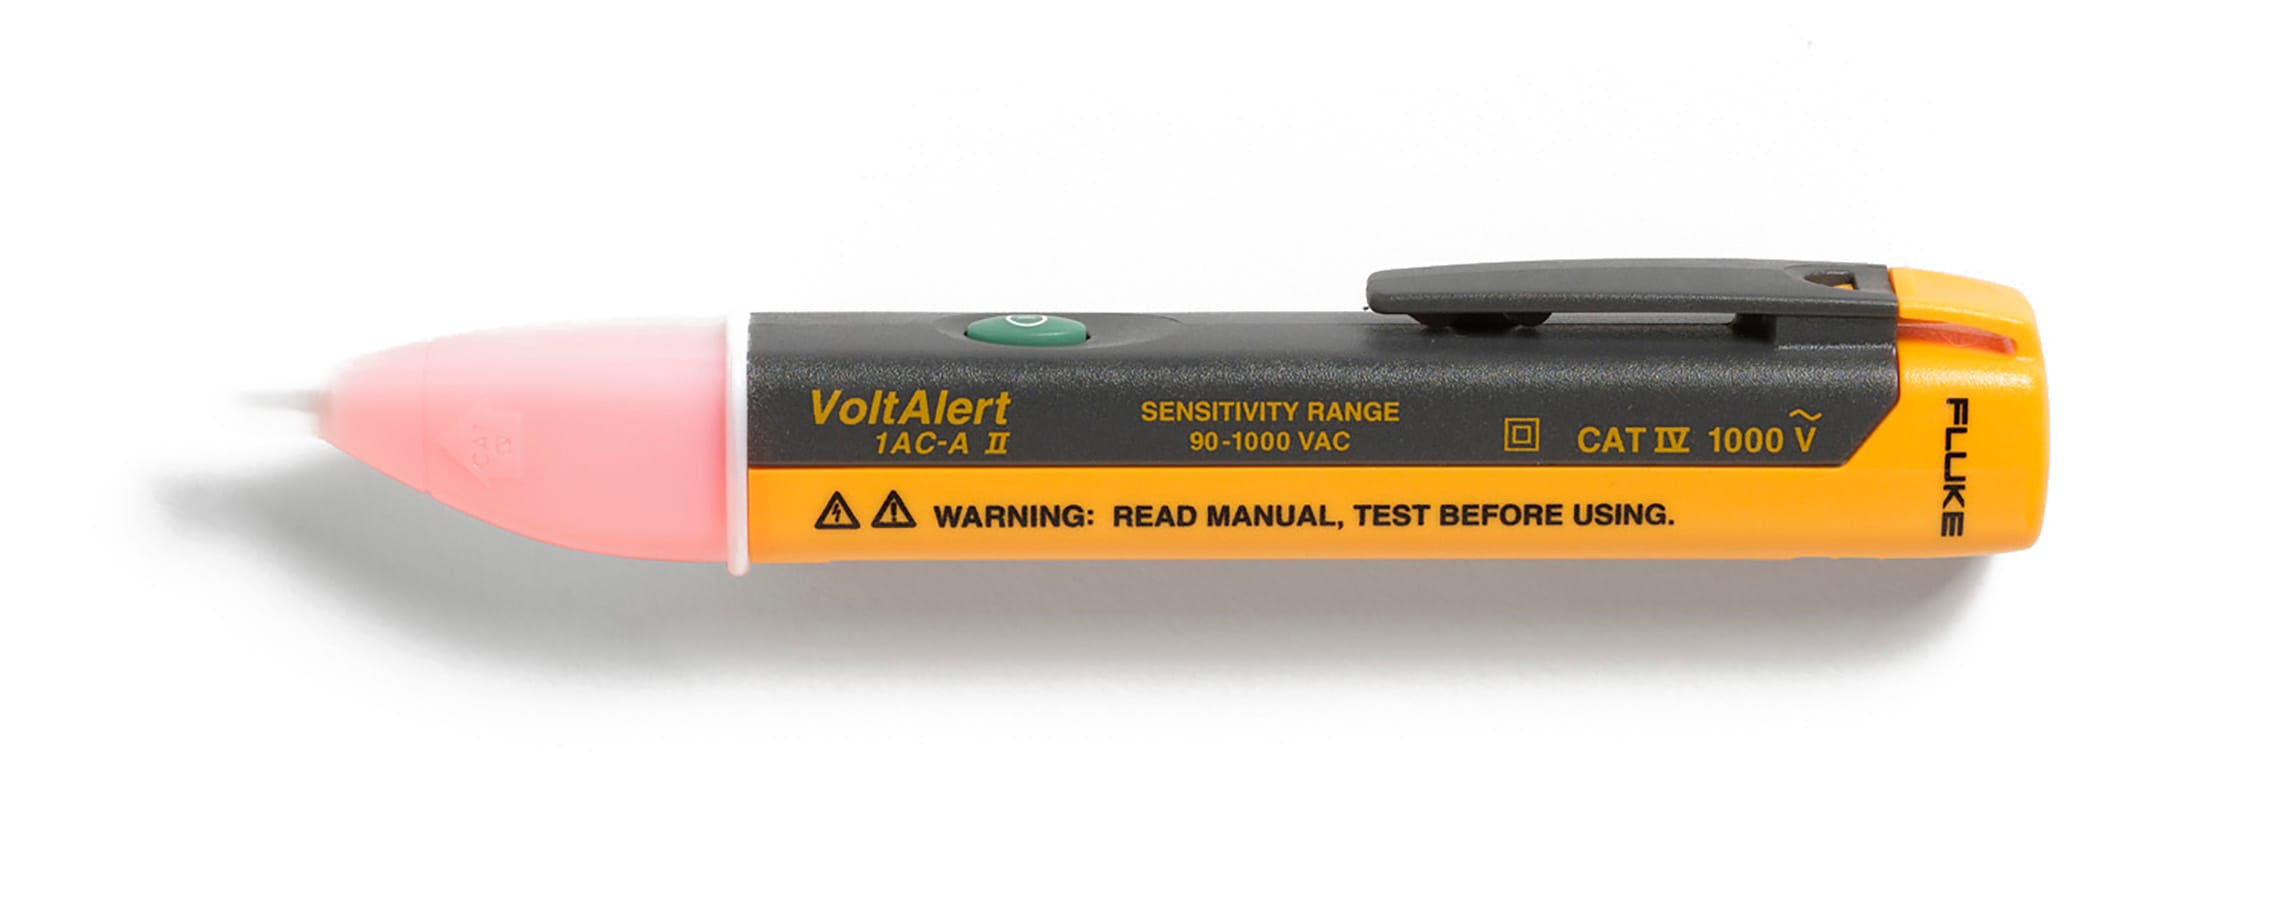 Voltage Tester Pen 1AC Non-Contact Volt Alert Stick Sensor Detector 90~1000V